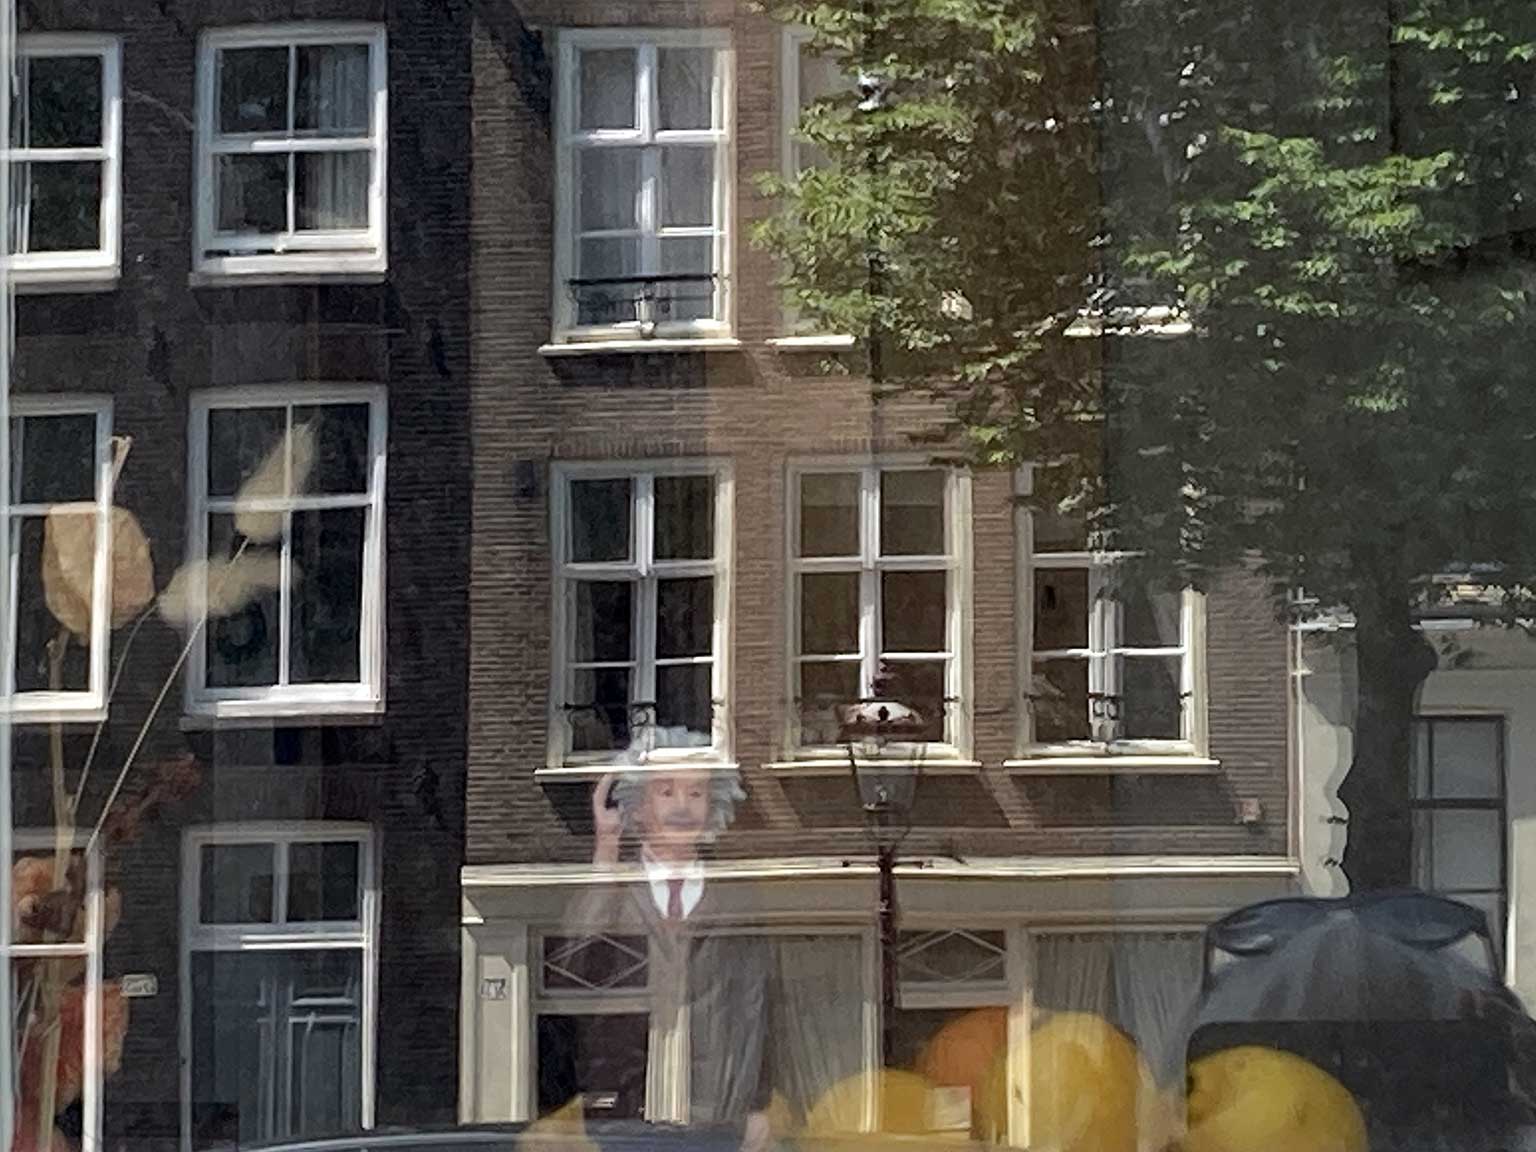 Pop van Albert Einstein achter raam op Prinsengracht, Amsterdam, met reflectie van huizen